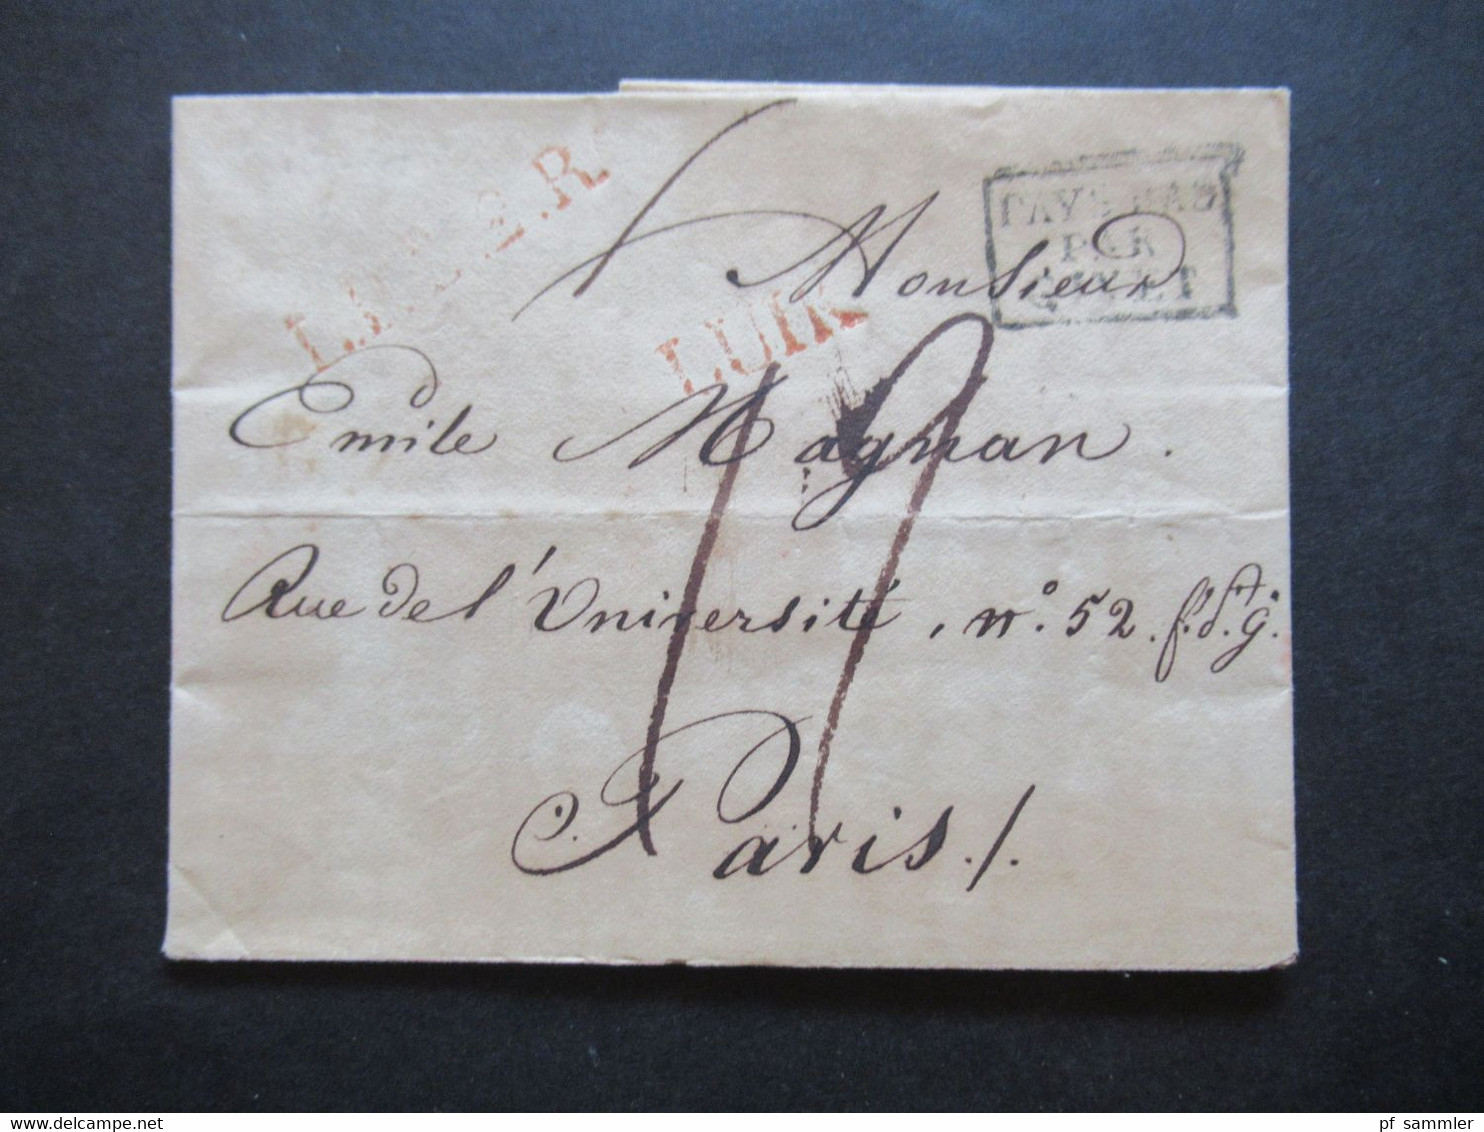 Belgien 11.12.1824 Ra3 Pays Bas Par Givet Liege - Paris Rue Del Universität No 52 Rote Stempel U.A. L1 Luik / Lüttich - 1815-1830 (Periodo Holandes)